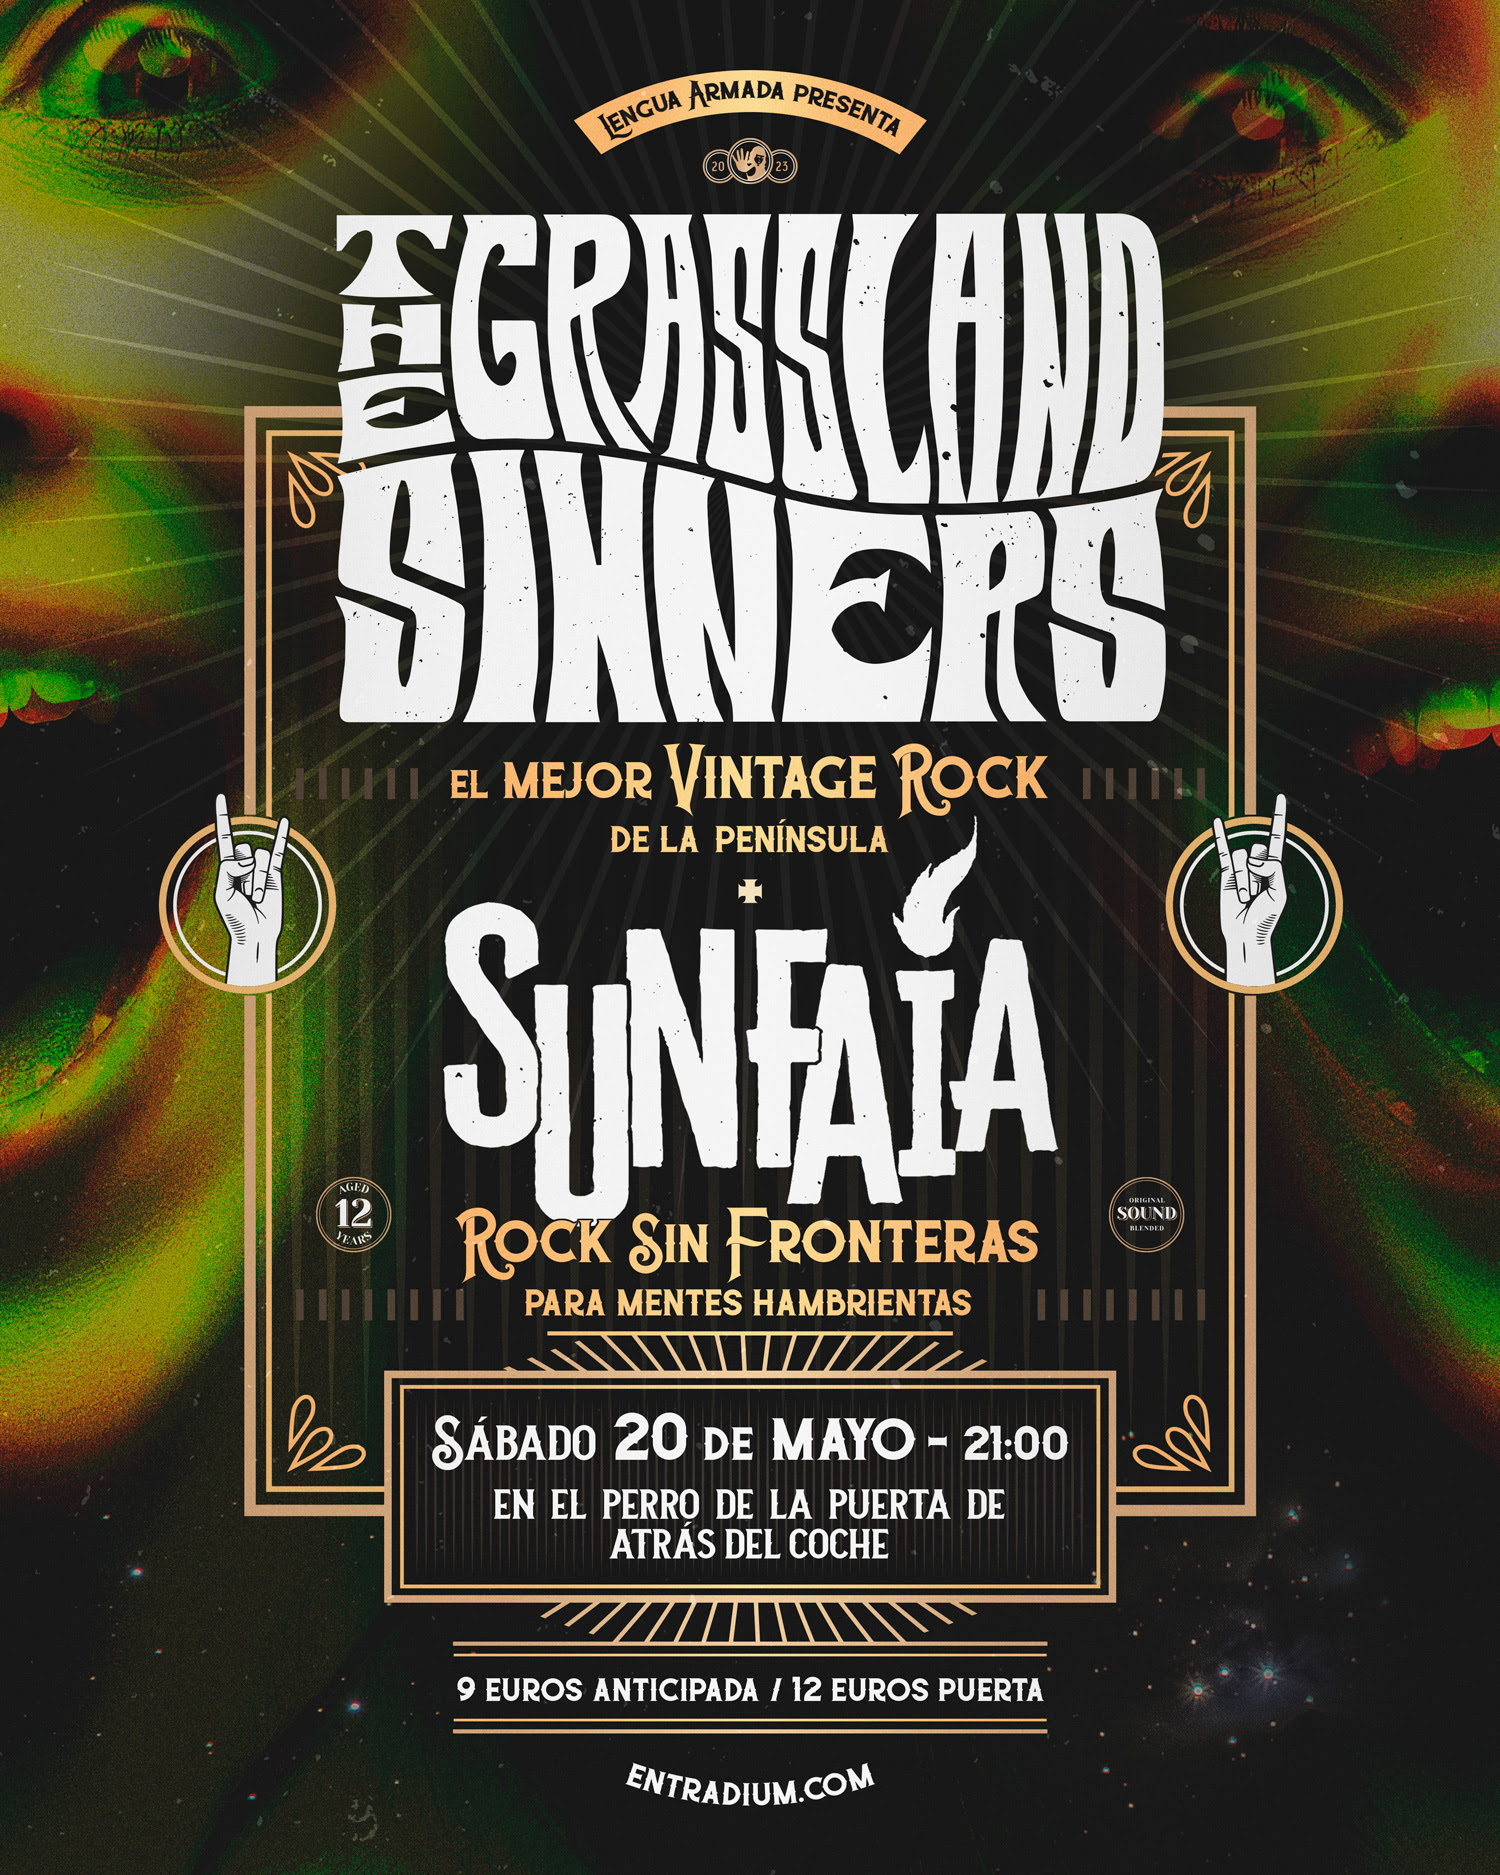 The Grassland Sinners + Sunfaia estarán actuando en Madrid el 20 de mayo